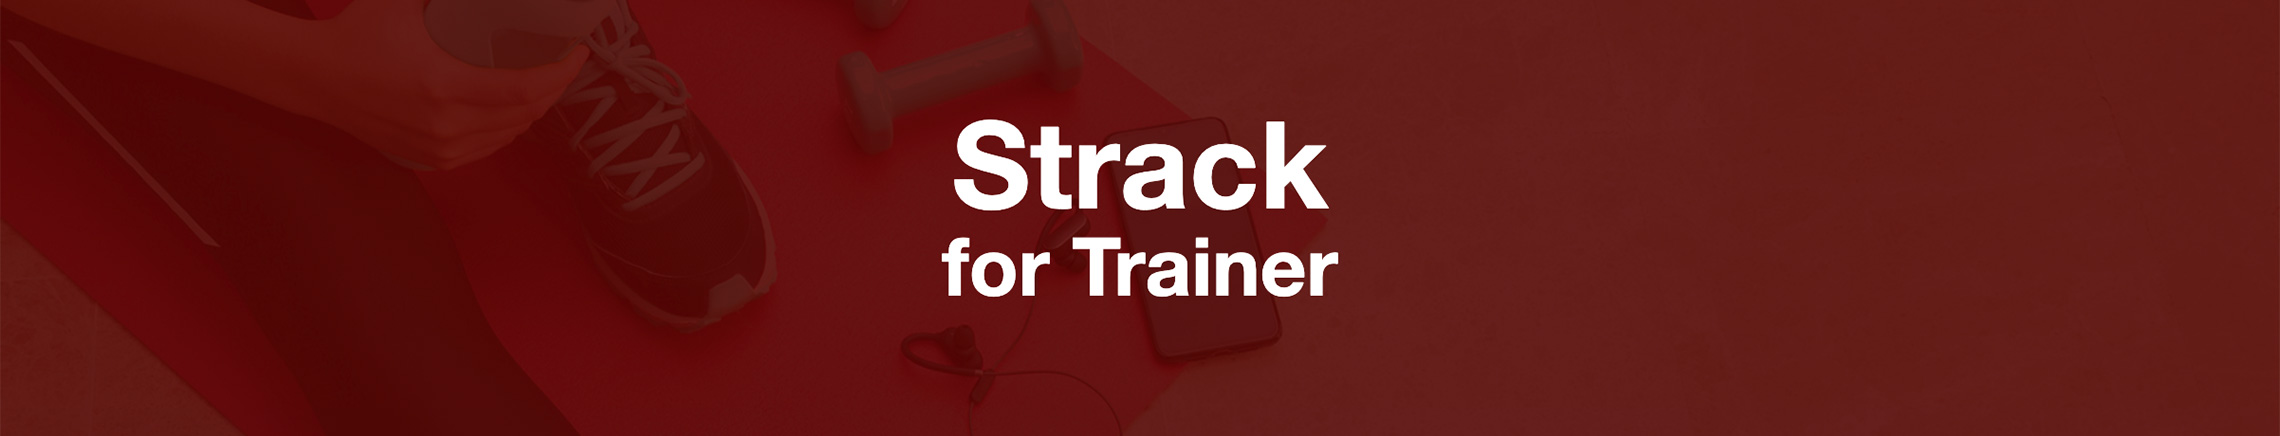 Strack (ストラック) for Trainer